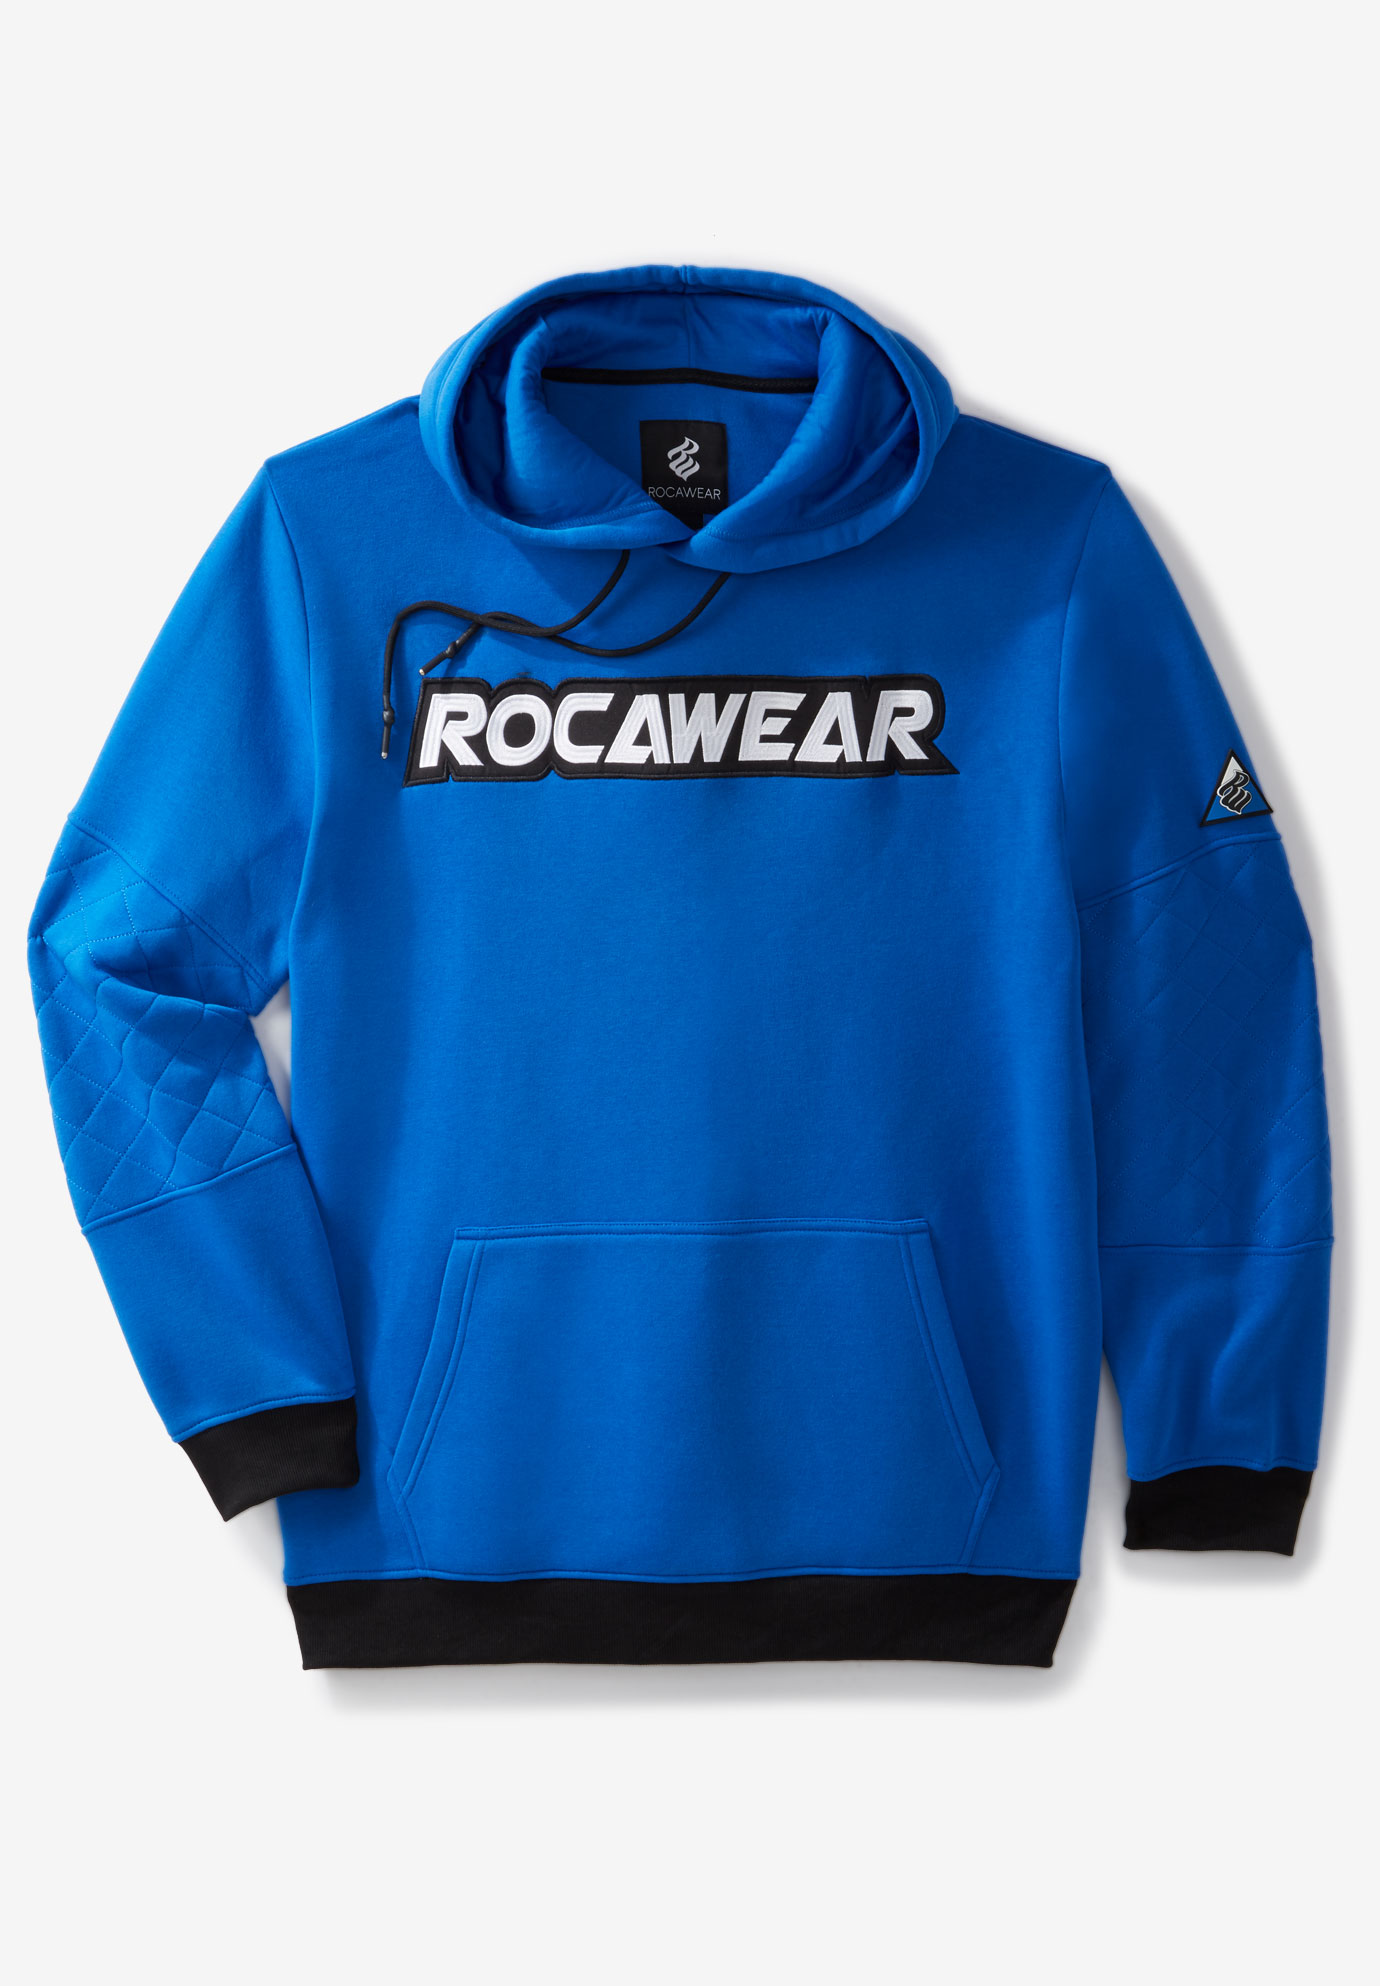 rocawear sweatshirt